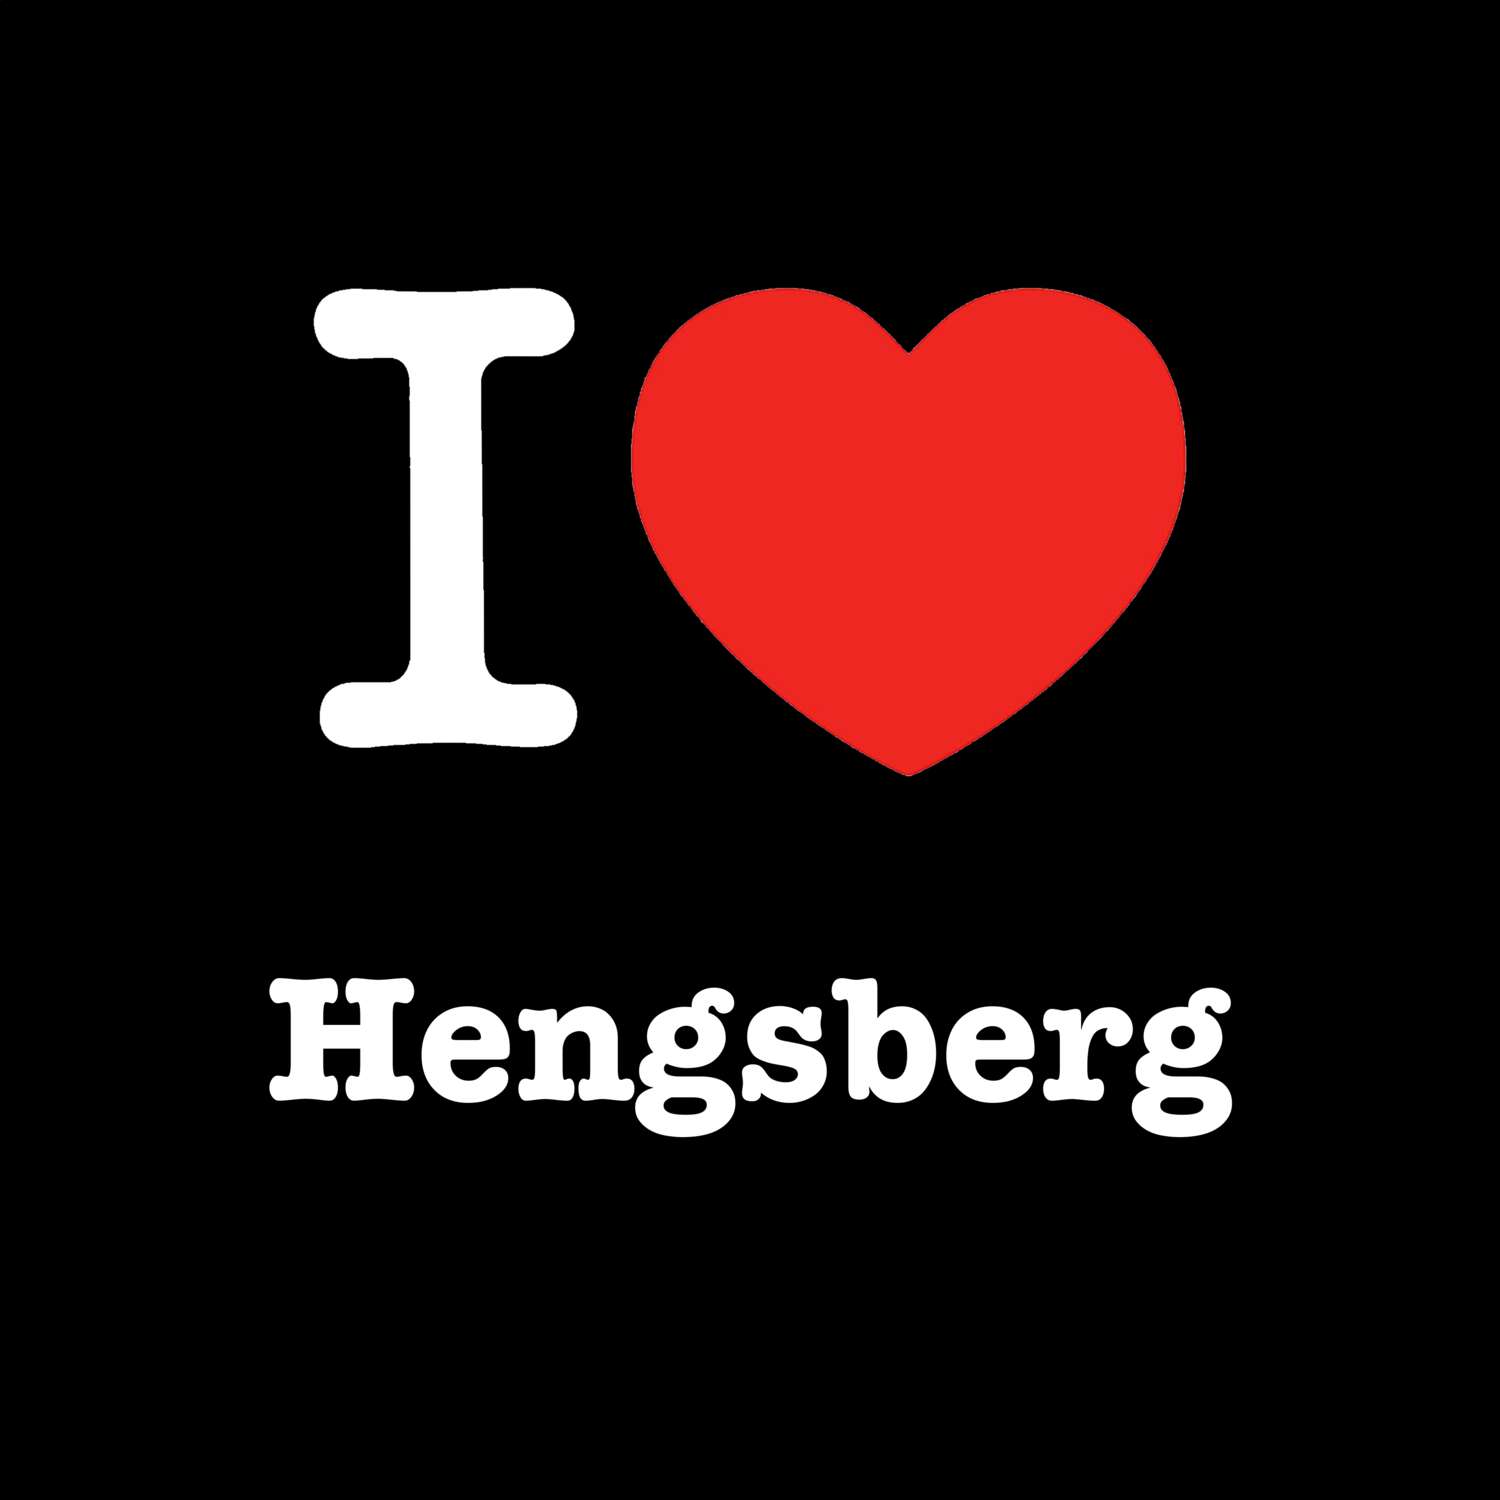 Hengsberg T-Shirt »I love«